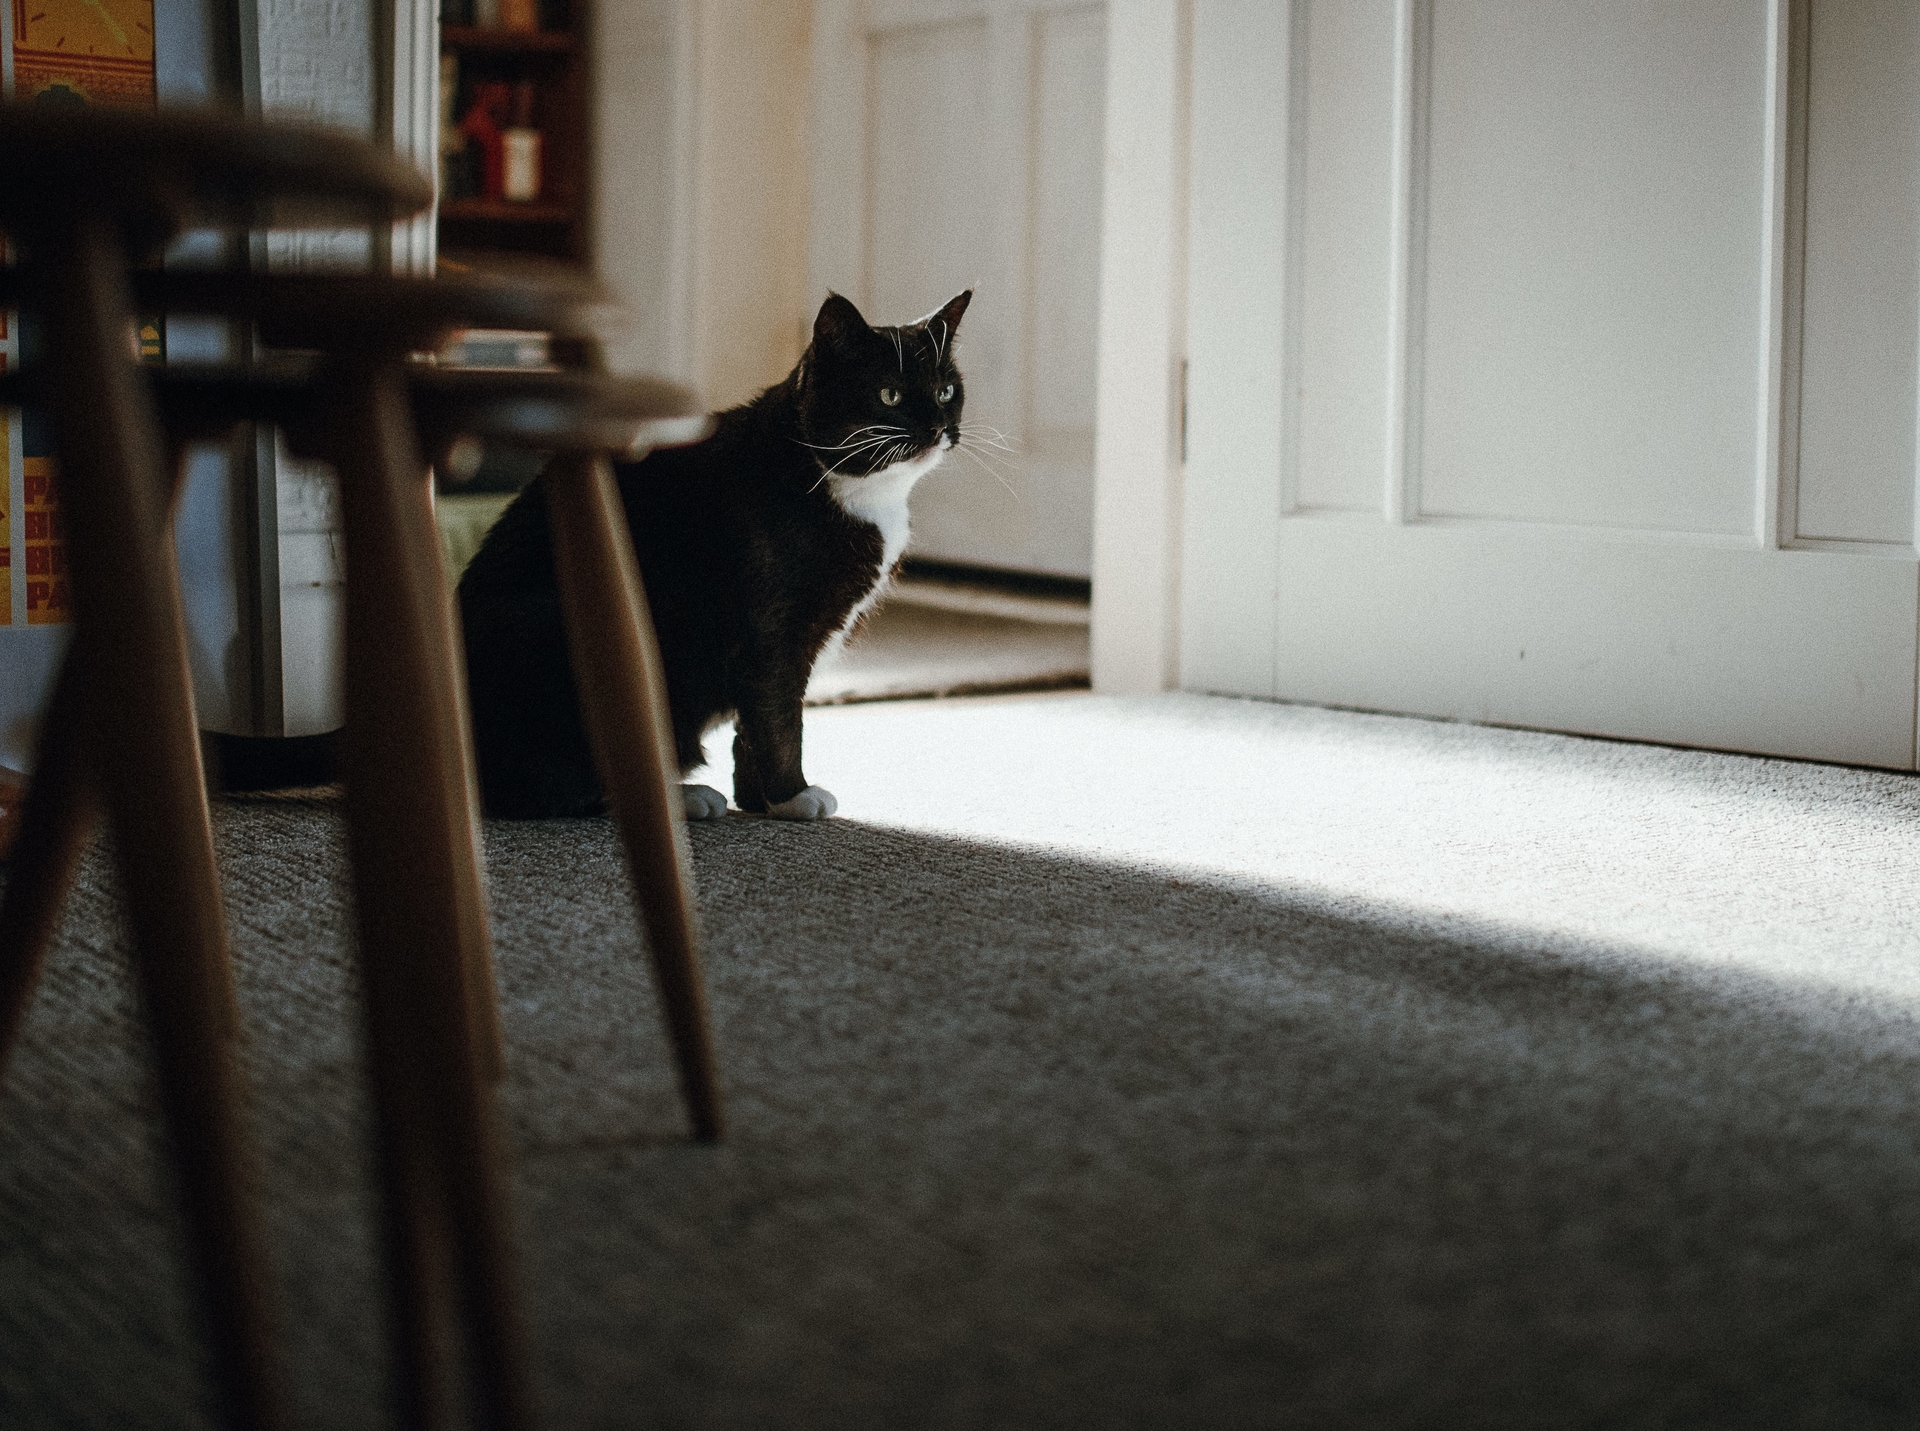 Доцент Меликова: на короткое время кошка может остаться дома одна